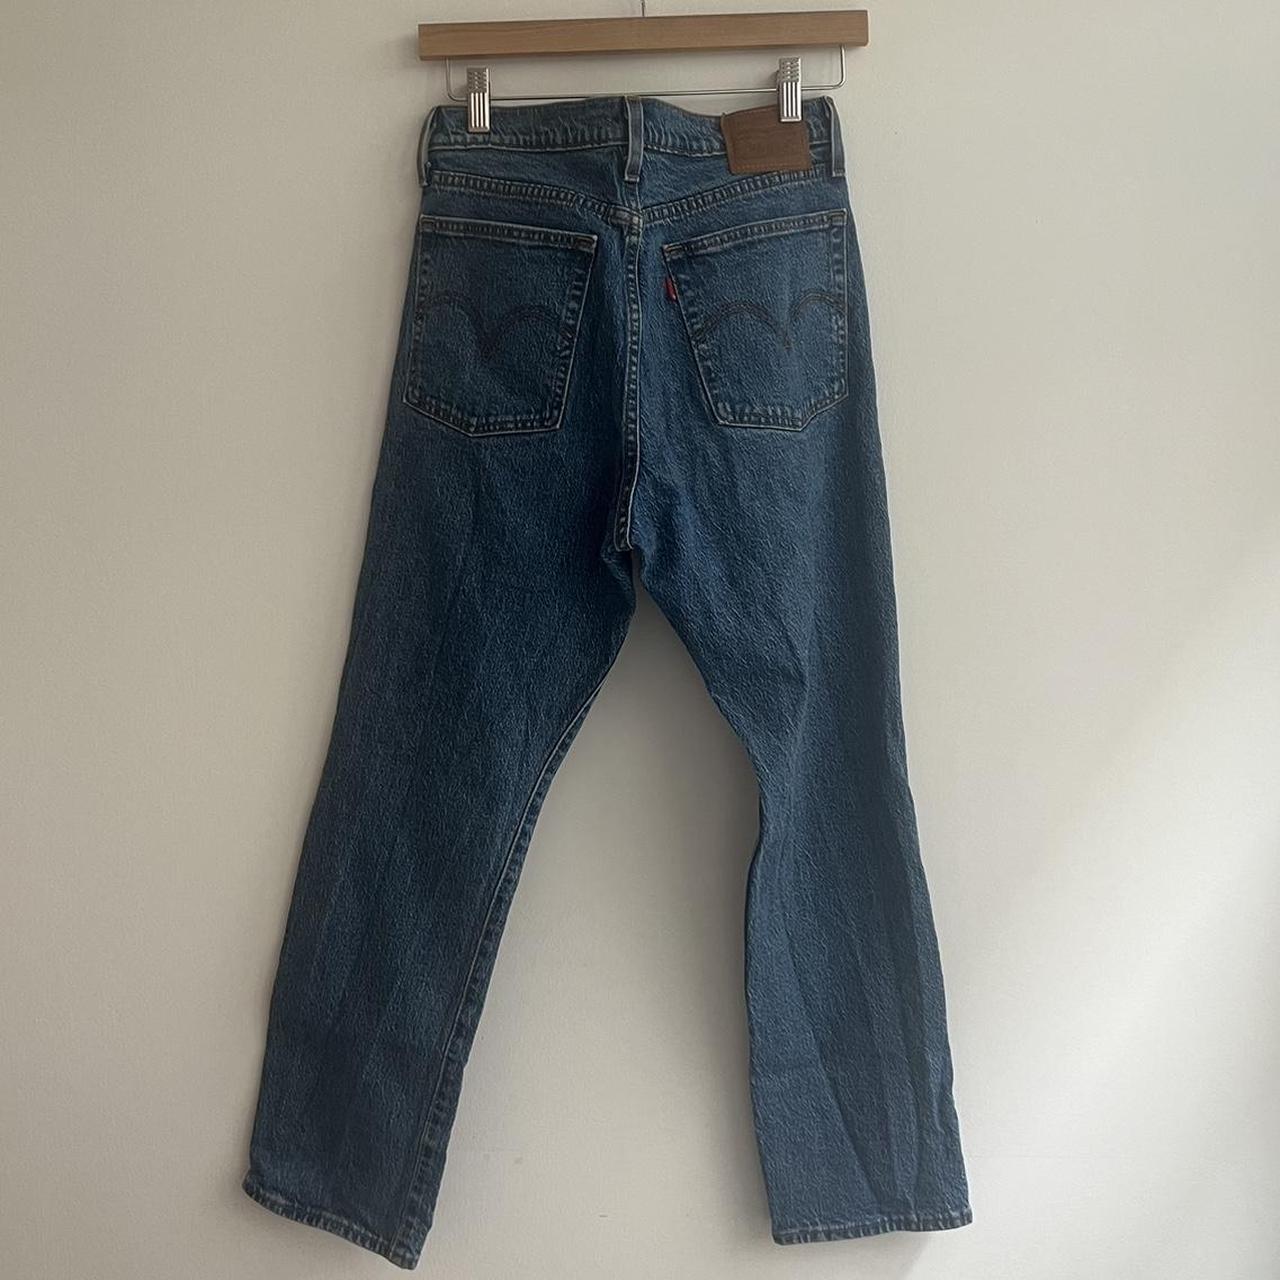 Levi’s Wedgie Straight Jeans -Medium wash -button... - Depop